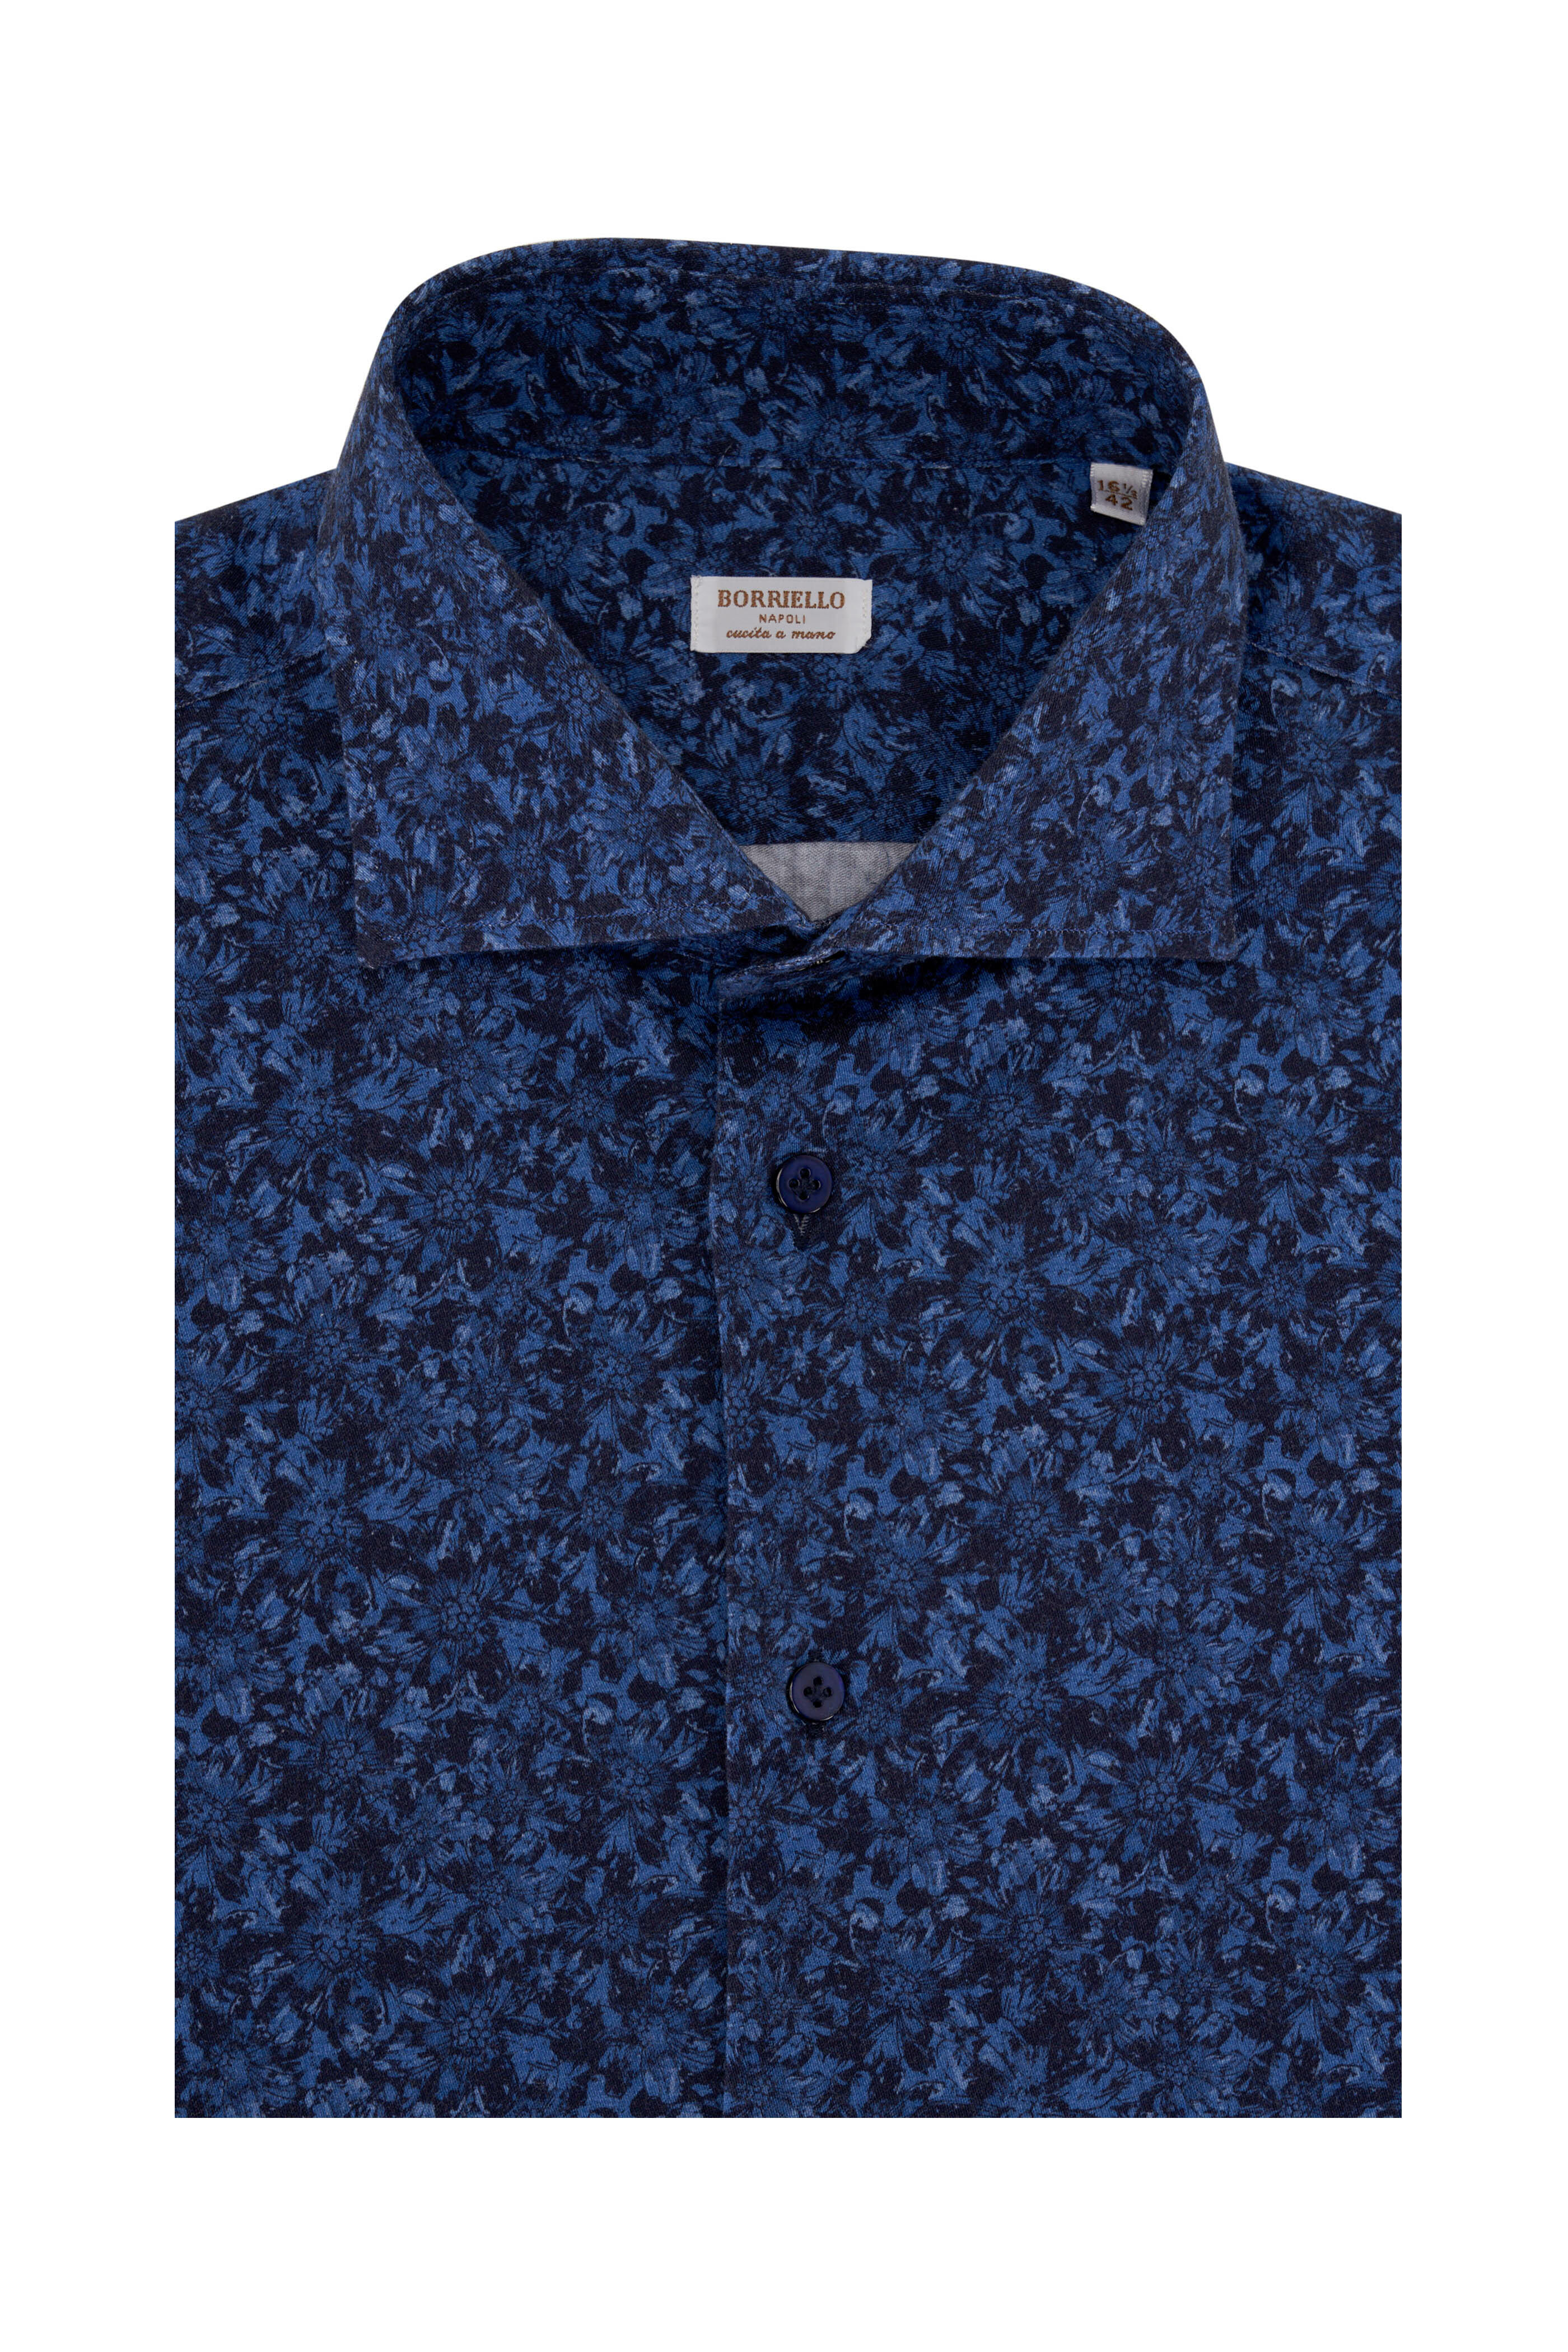 Fray Light and Dark Blue Floral Print Cotton Dress Shirt XXL